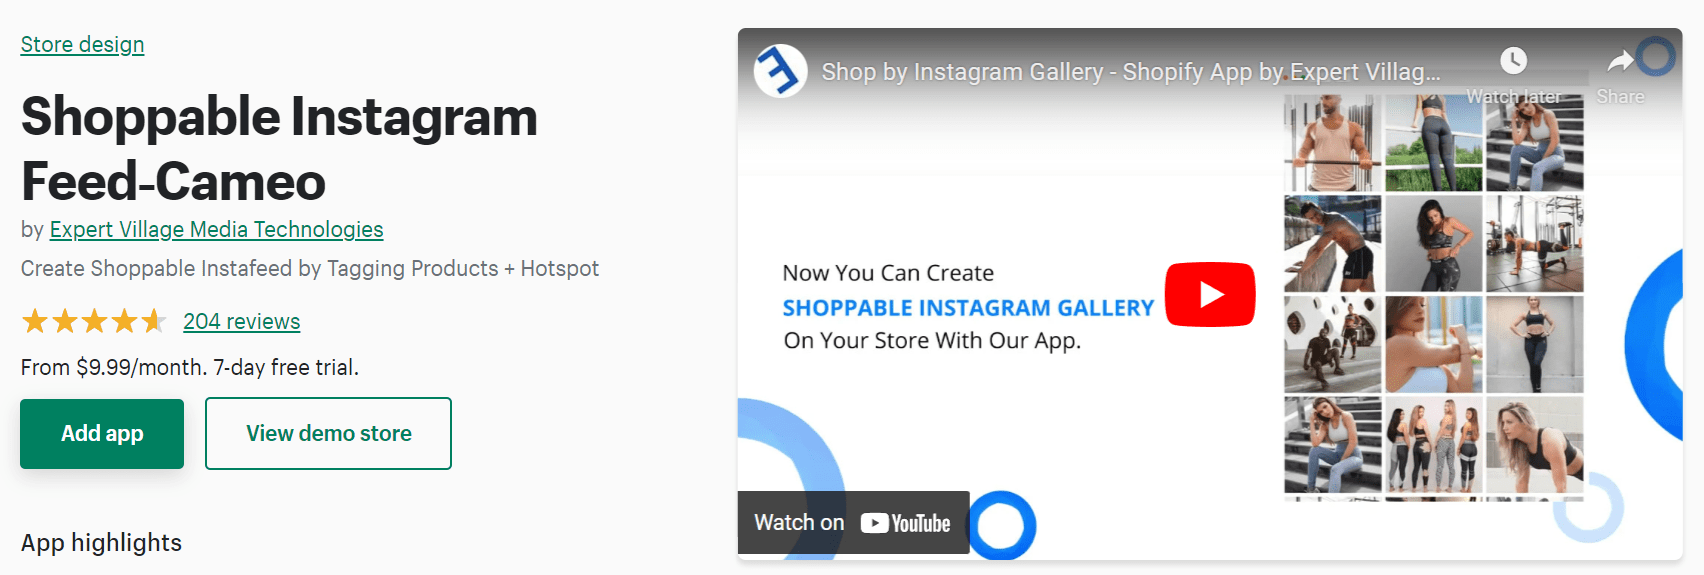 Shoppable Instagram Feed App